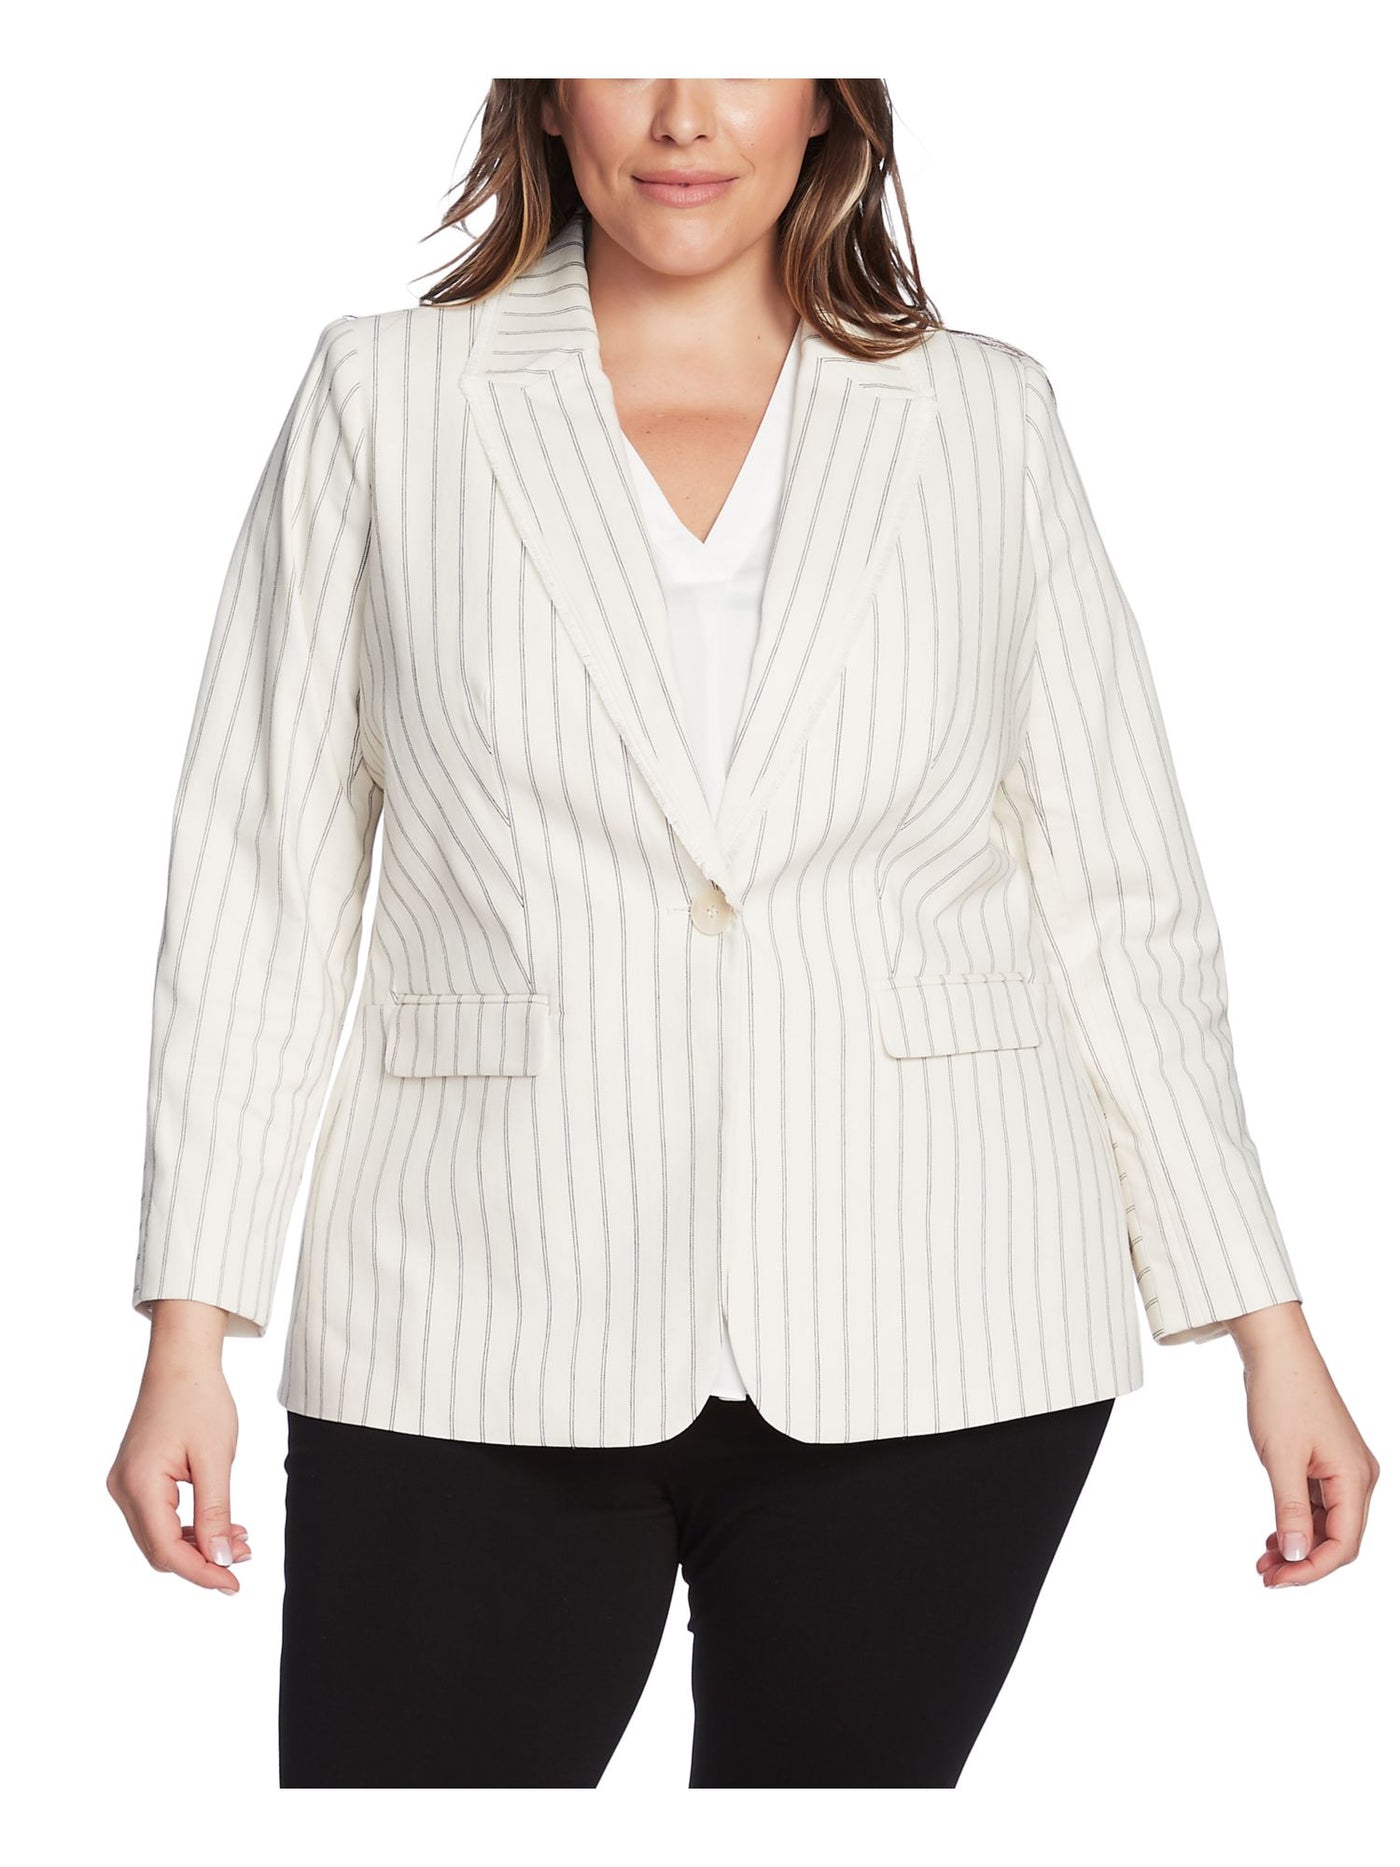 VINCE CAMUTO Womens Ivory Striped Blazer Jacket Plus 24W